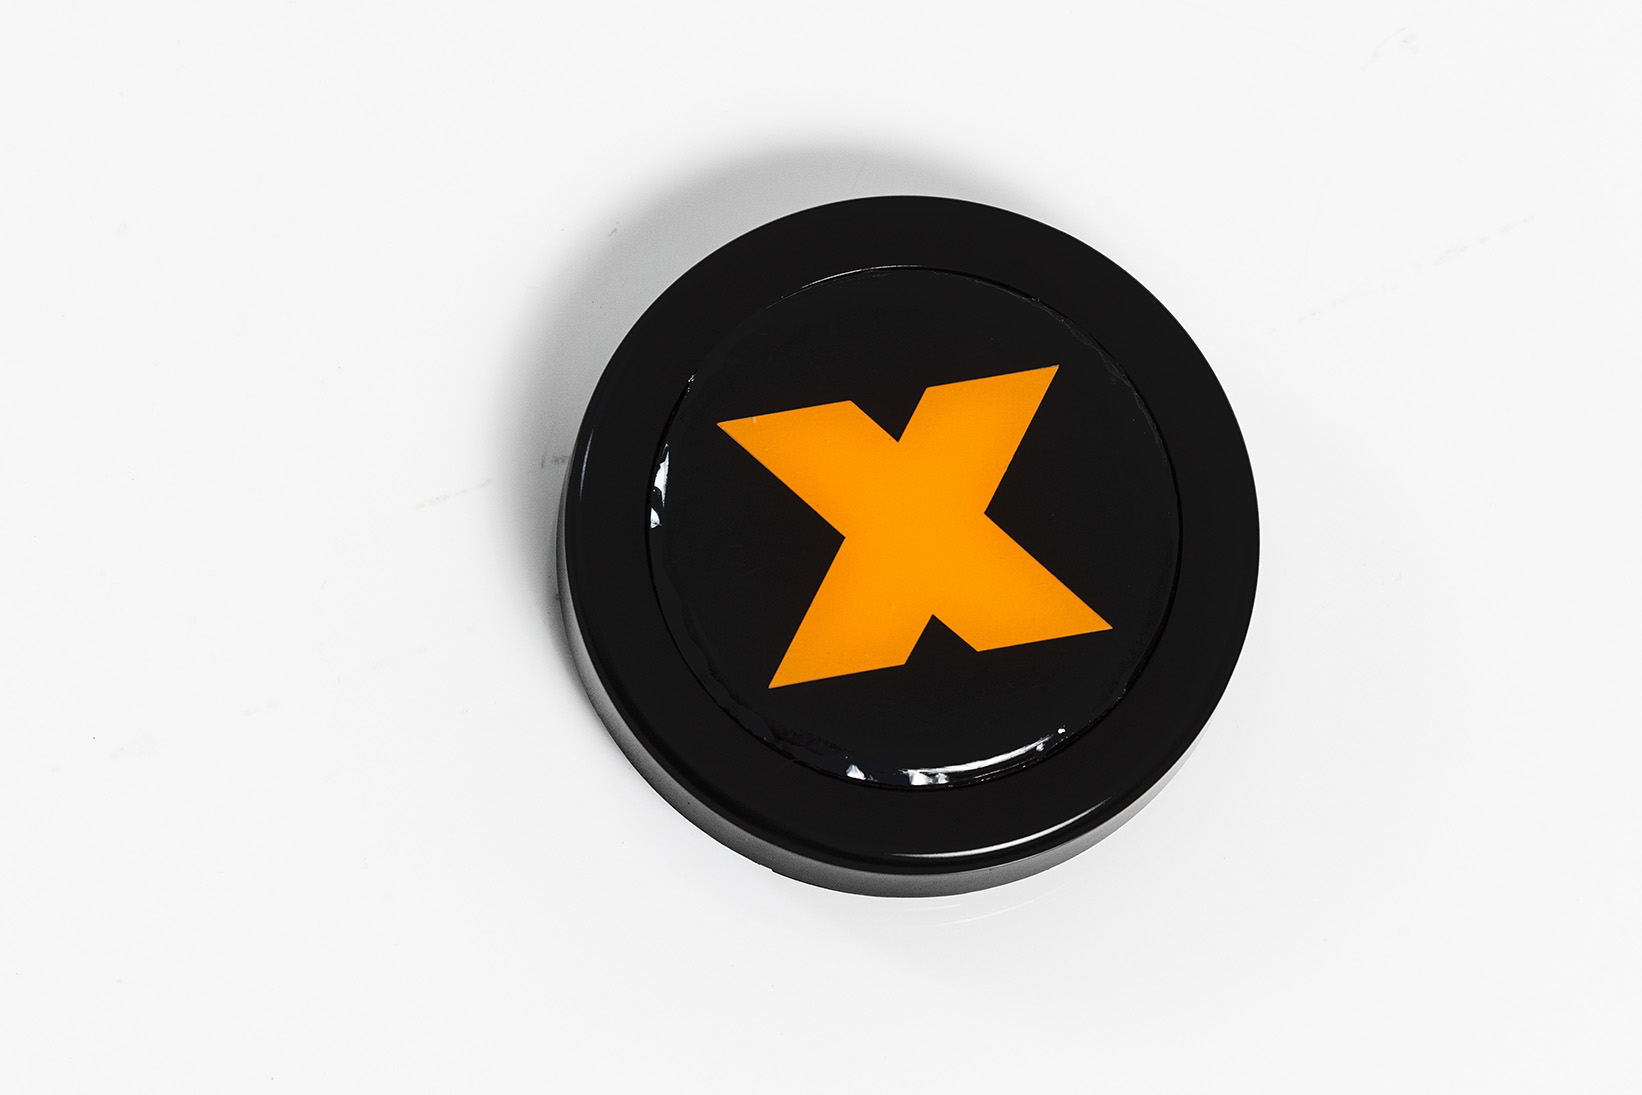 Rim Cover with X-raid Logo